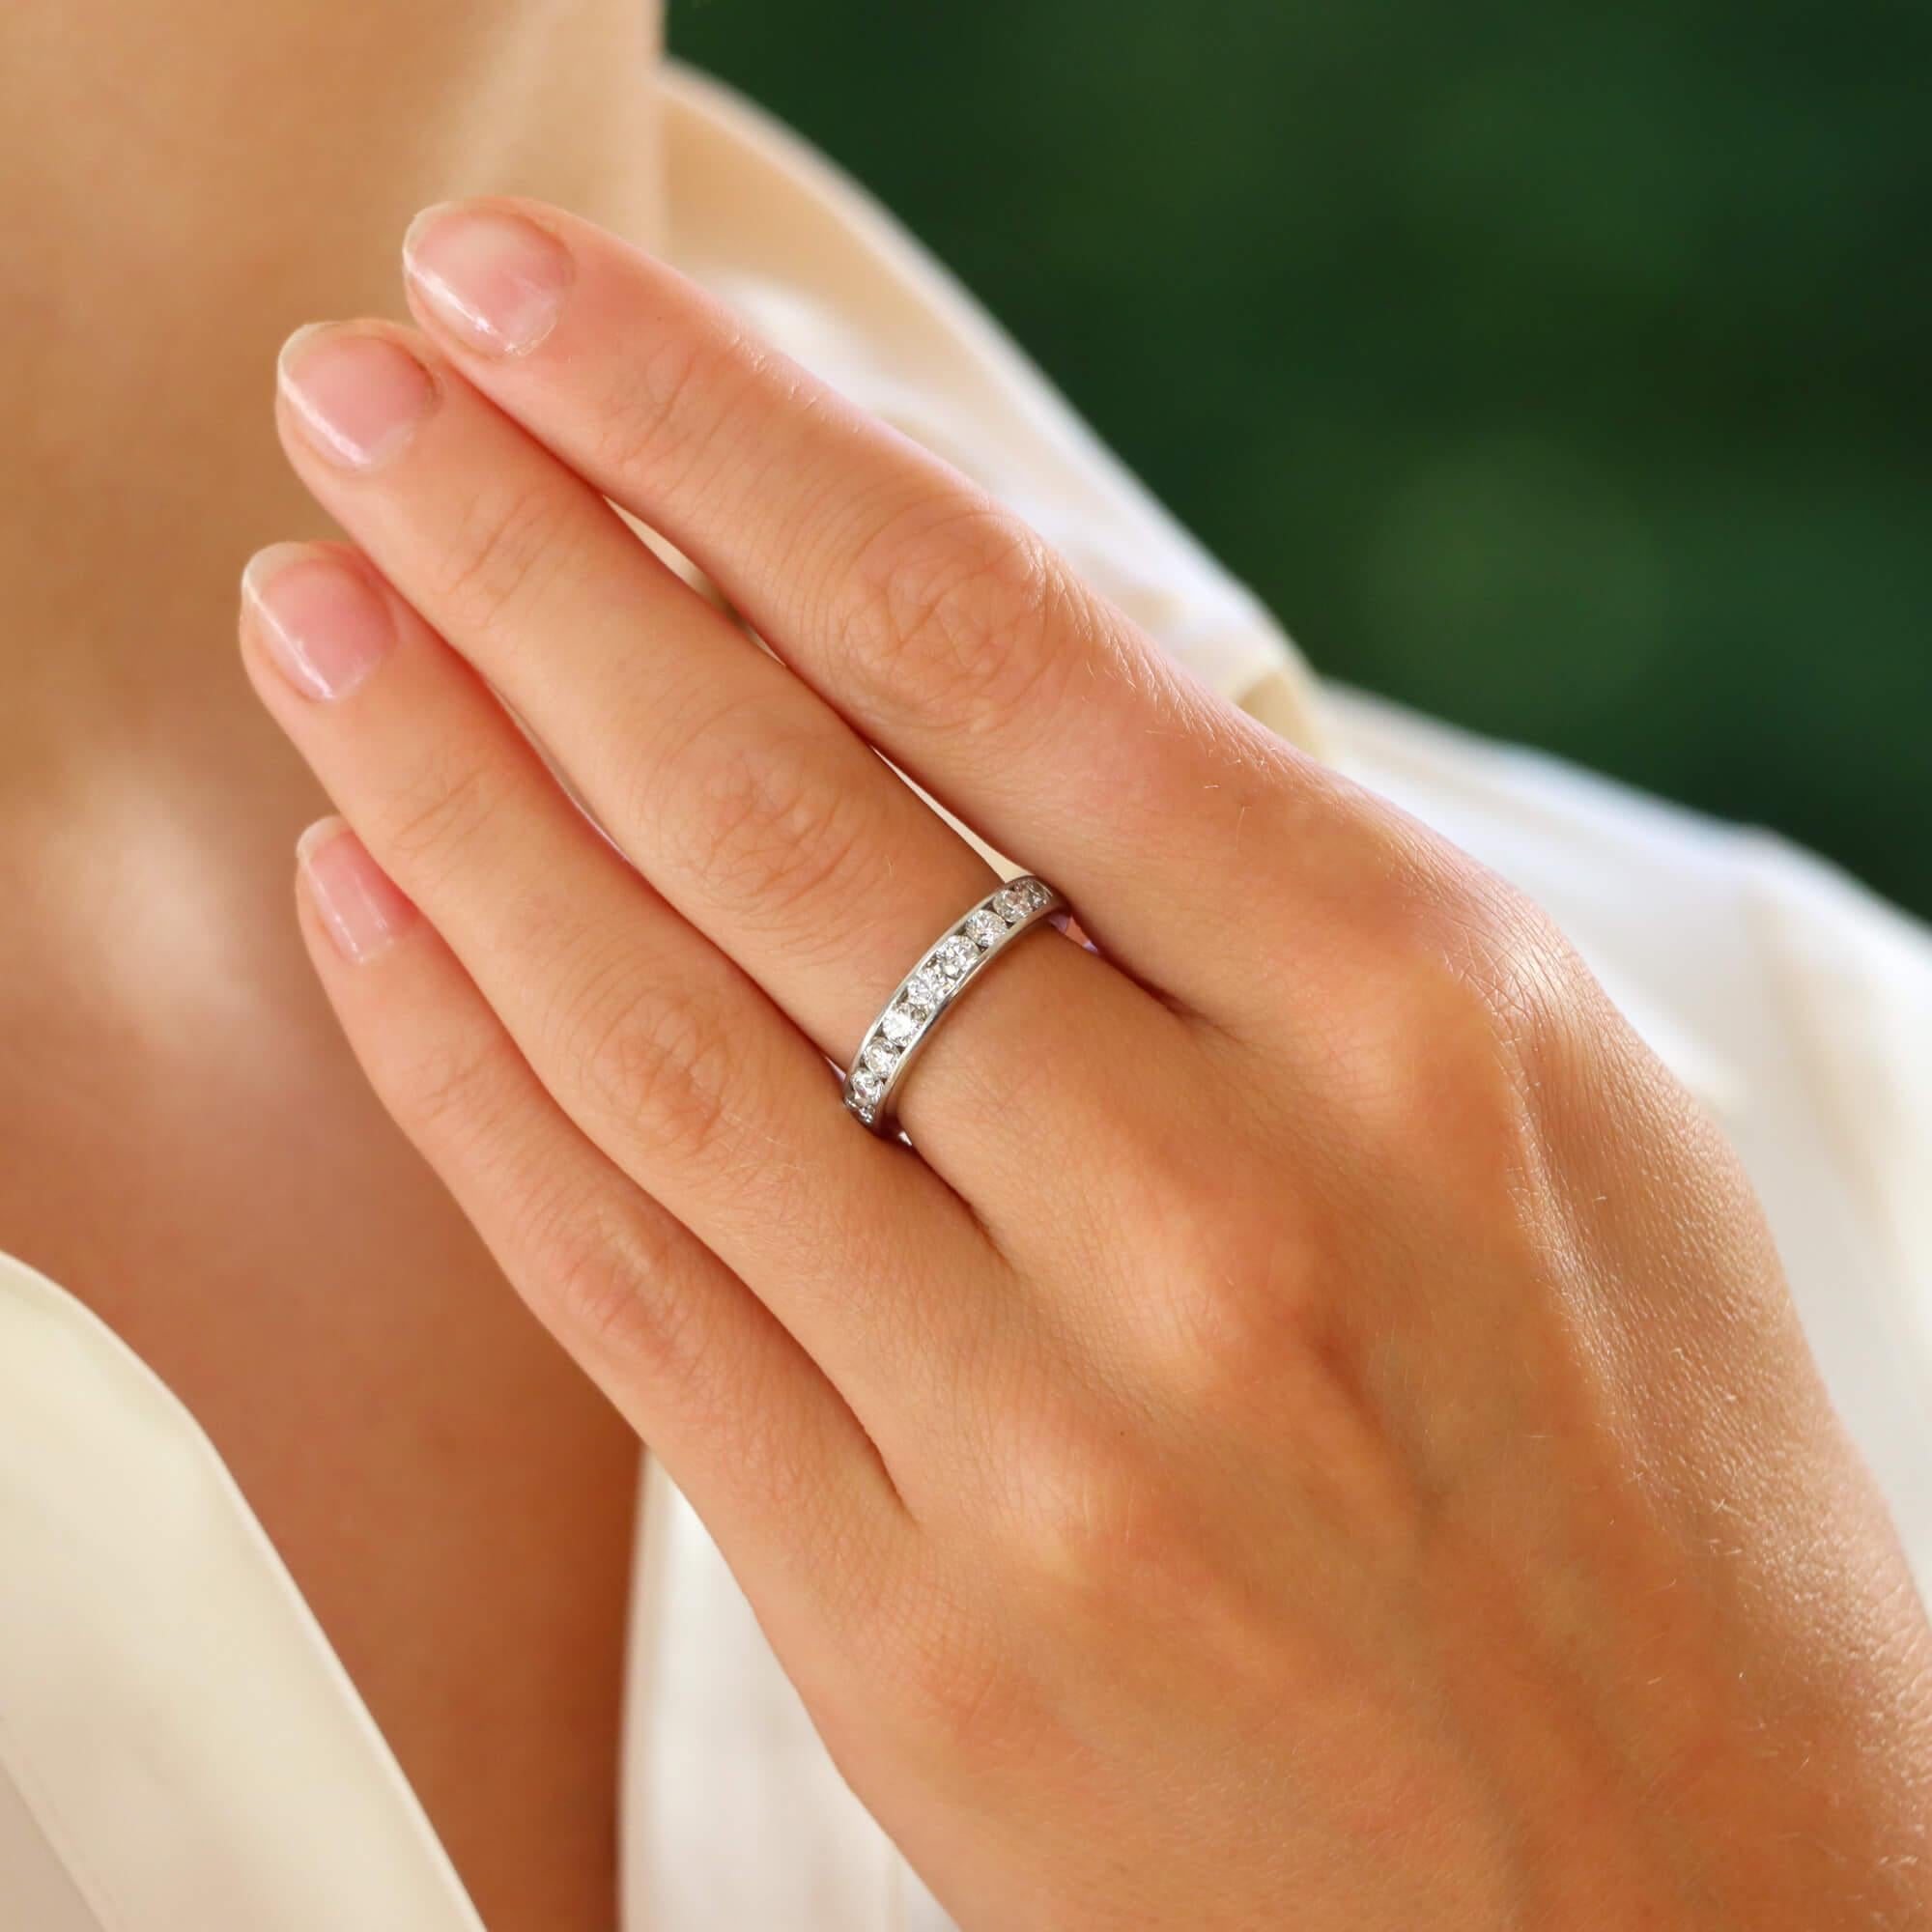  Ein schöner signierter Tiffany & Co. Diamant-Halb-Ewigkeitsring in Platin gefasst.

Der Ring ist mit genau 9 funkelnden runden Diamanten im Brillantschliff besetzt, die alle perfekt in ein 4 Millimeter langes Platinband eingefasst sind. Aufgrund